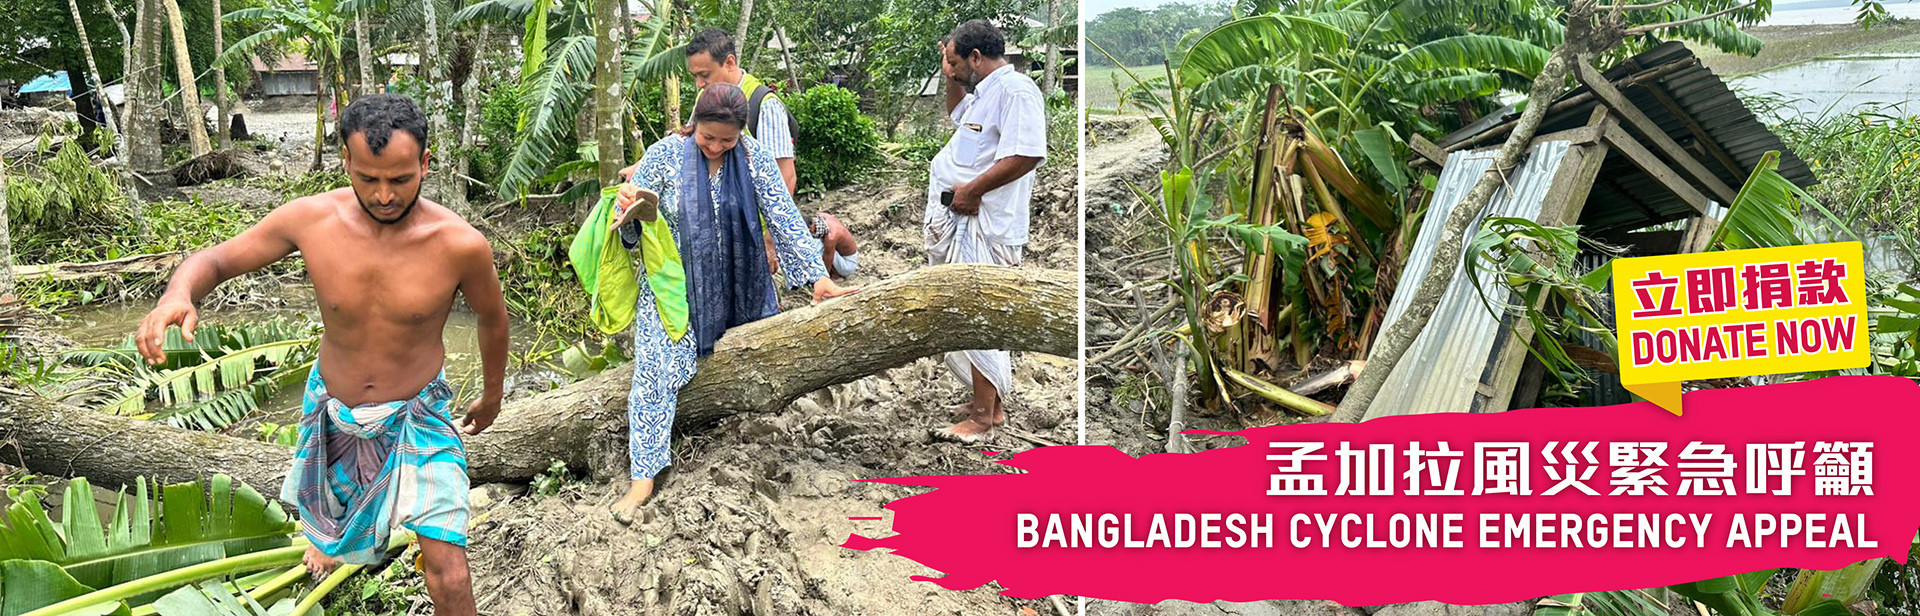 孟加拉風災緊急呼籲